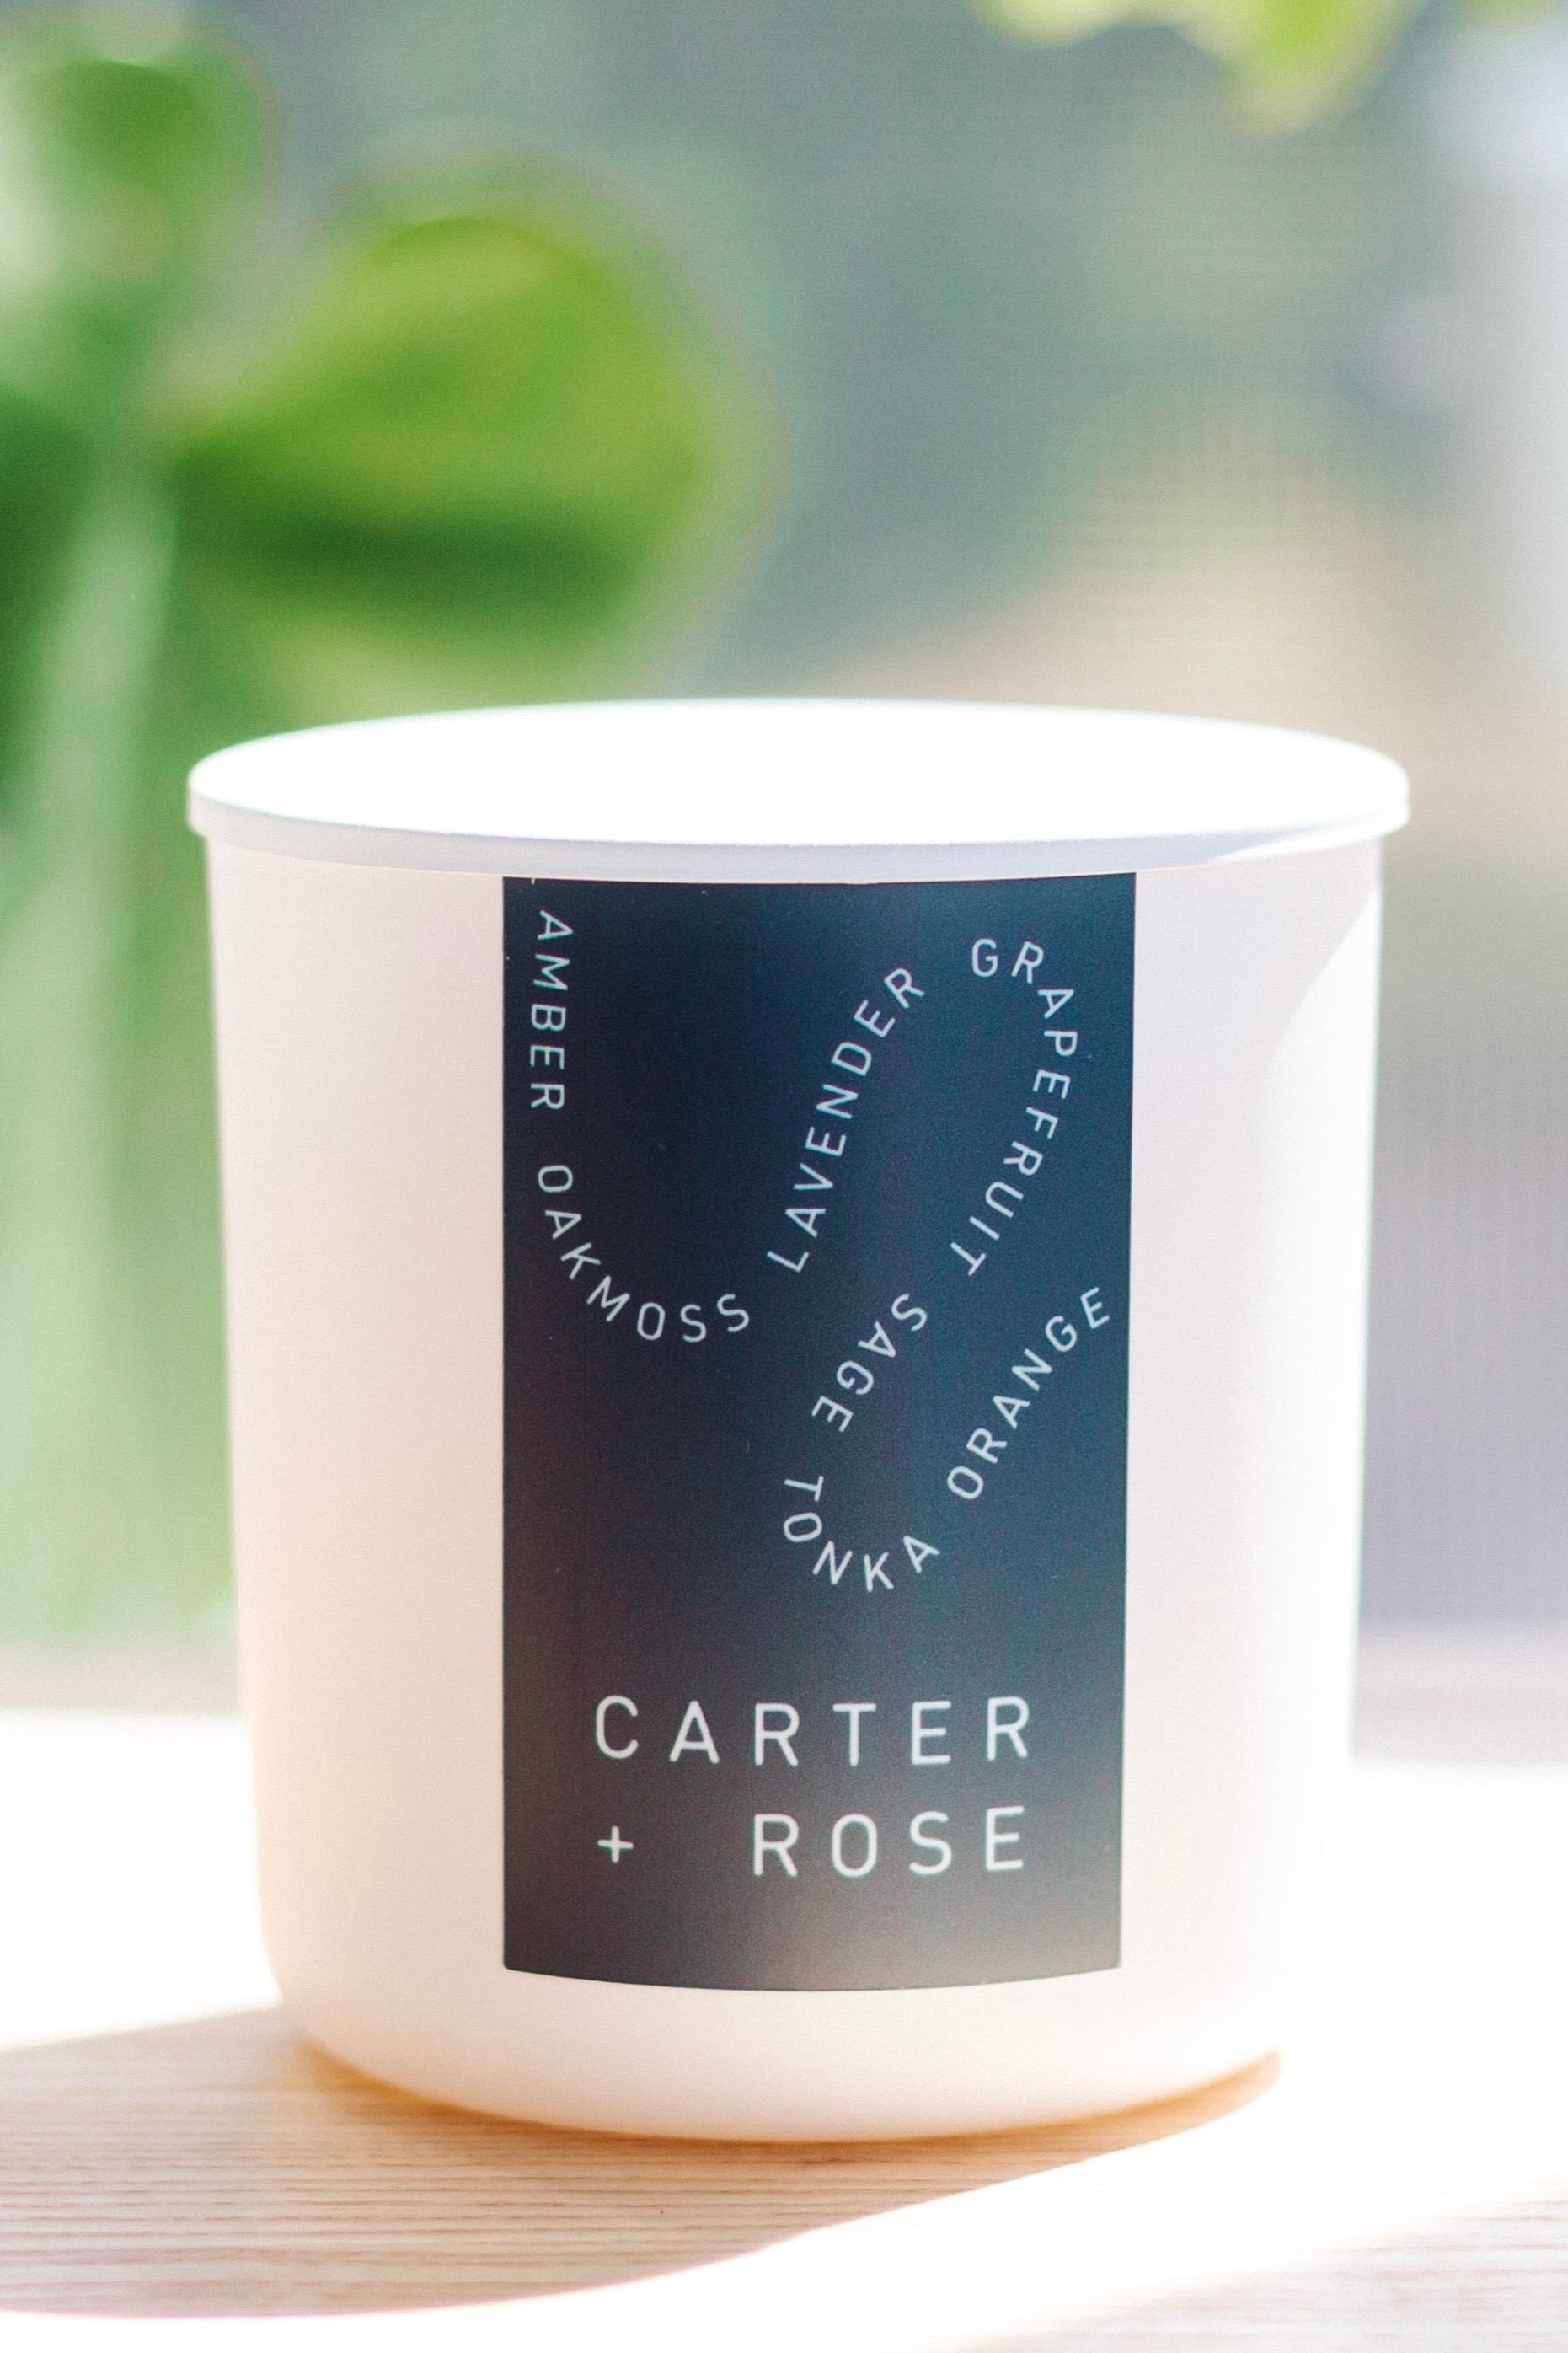 Carter + Rose Candles - Carter + Rose